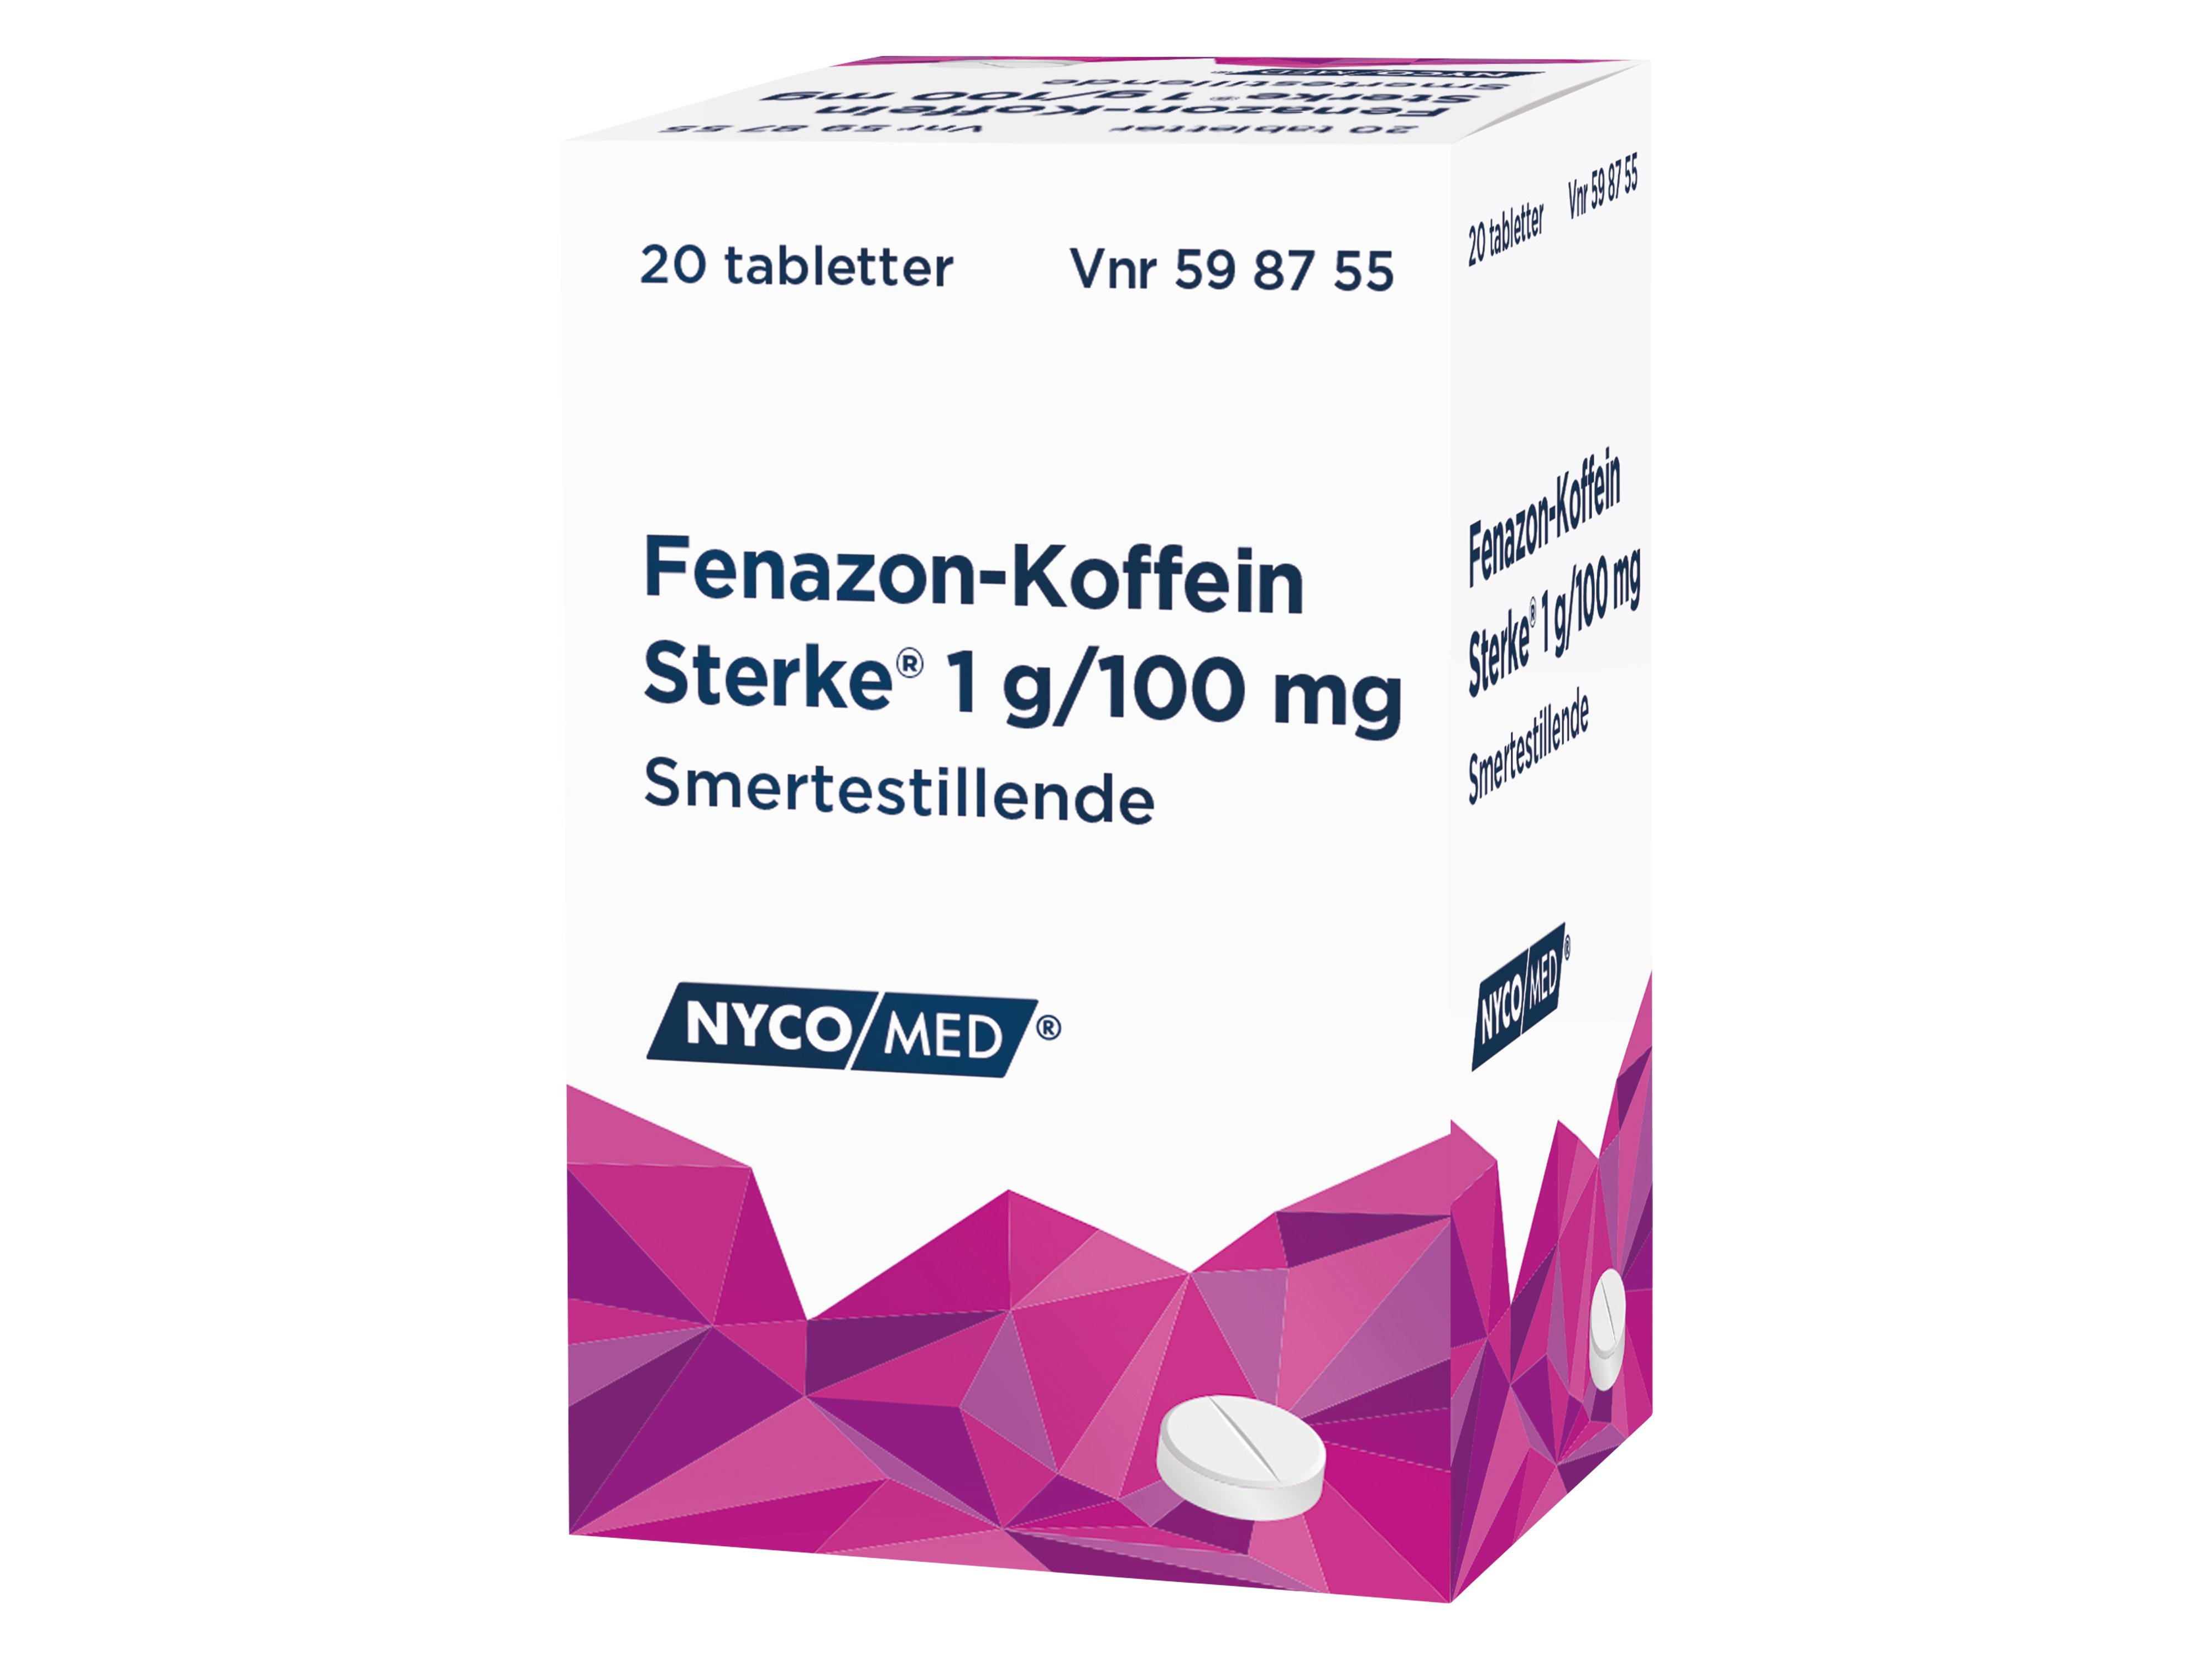 Fenazon-Koffein Sterke tabletter, 20 stk.